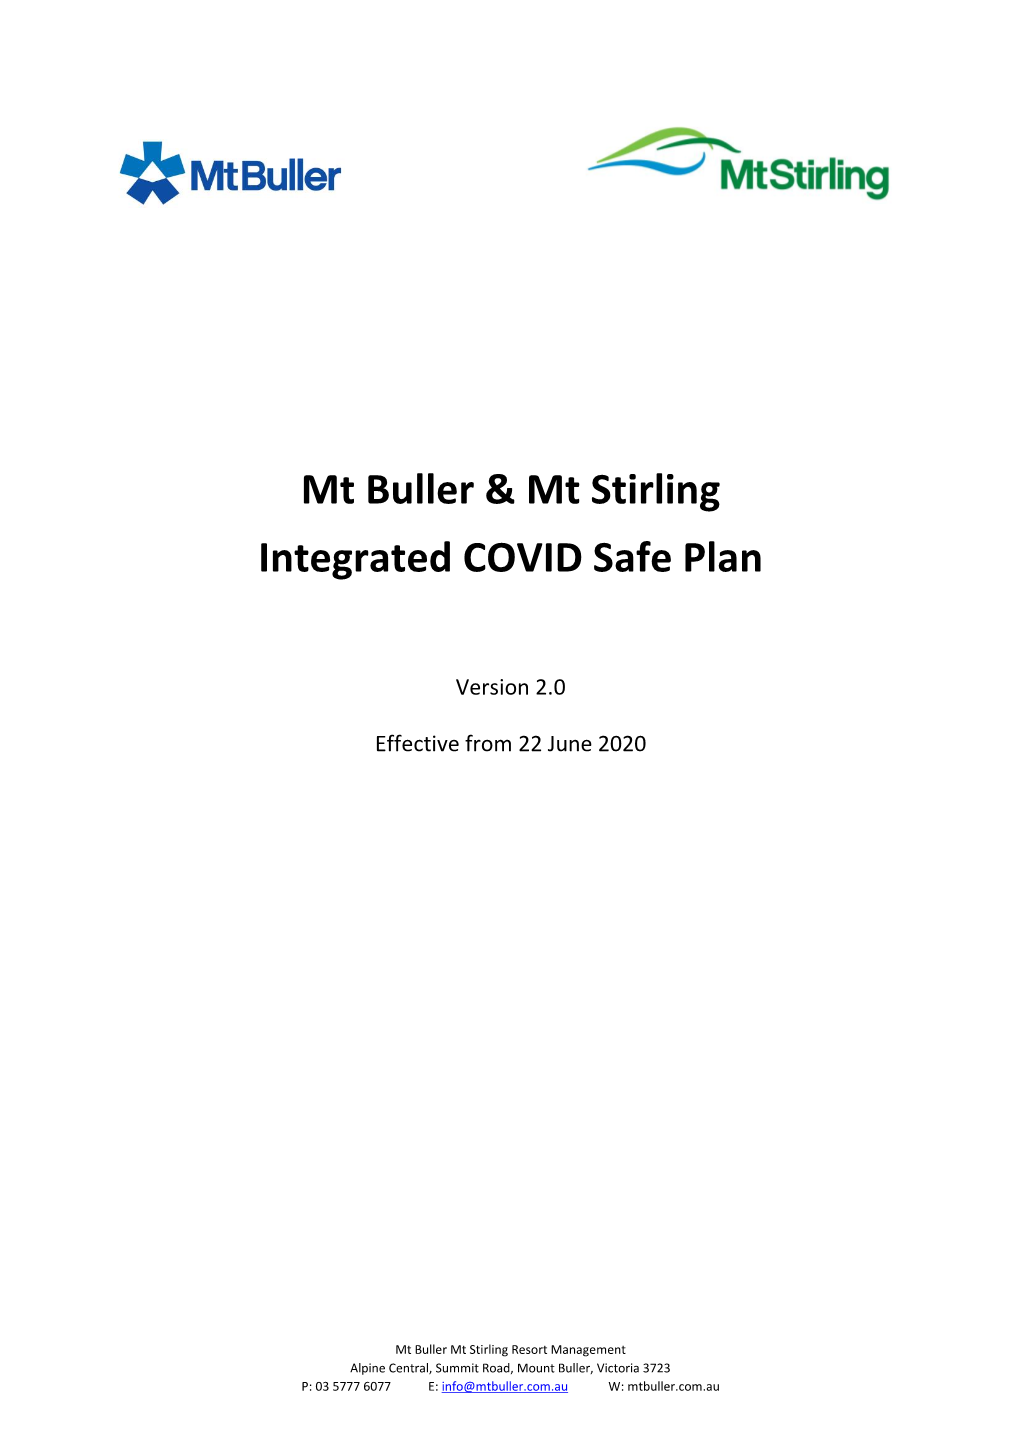 Mt Buller & Mt Stirling Integrated COVID Safe Plan